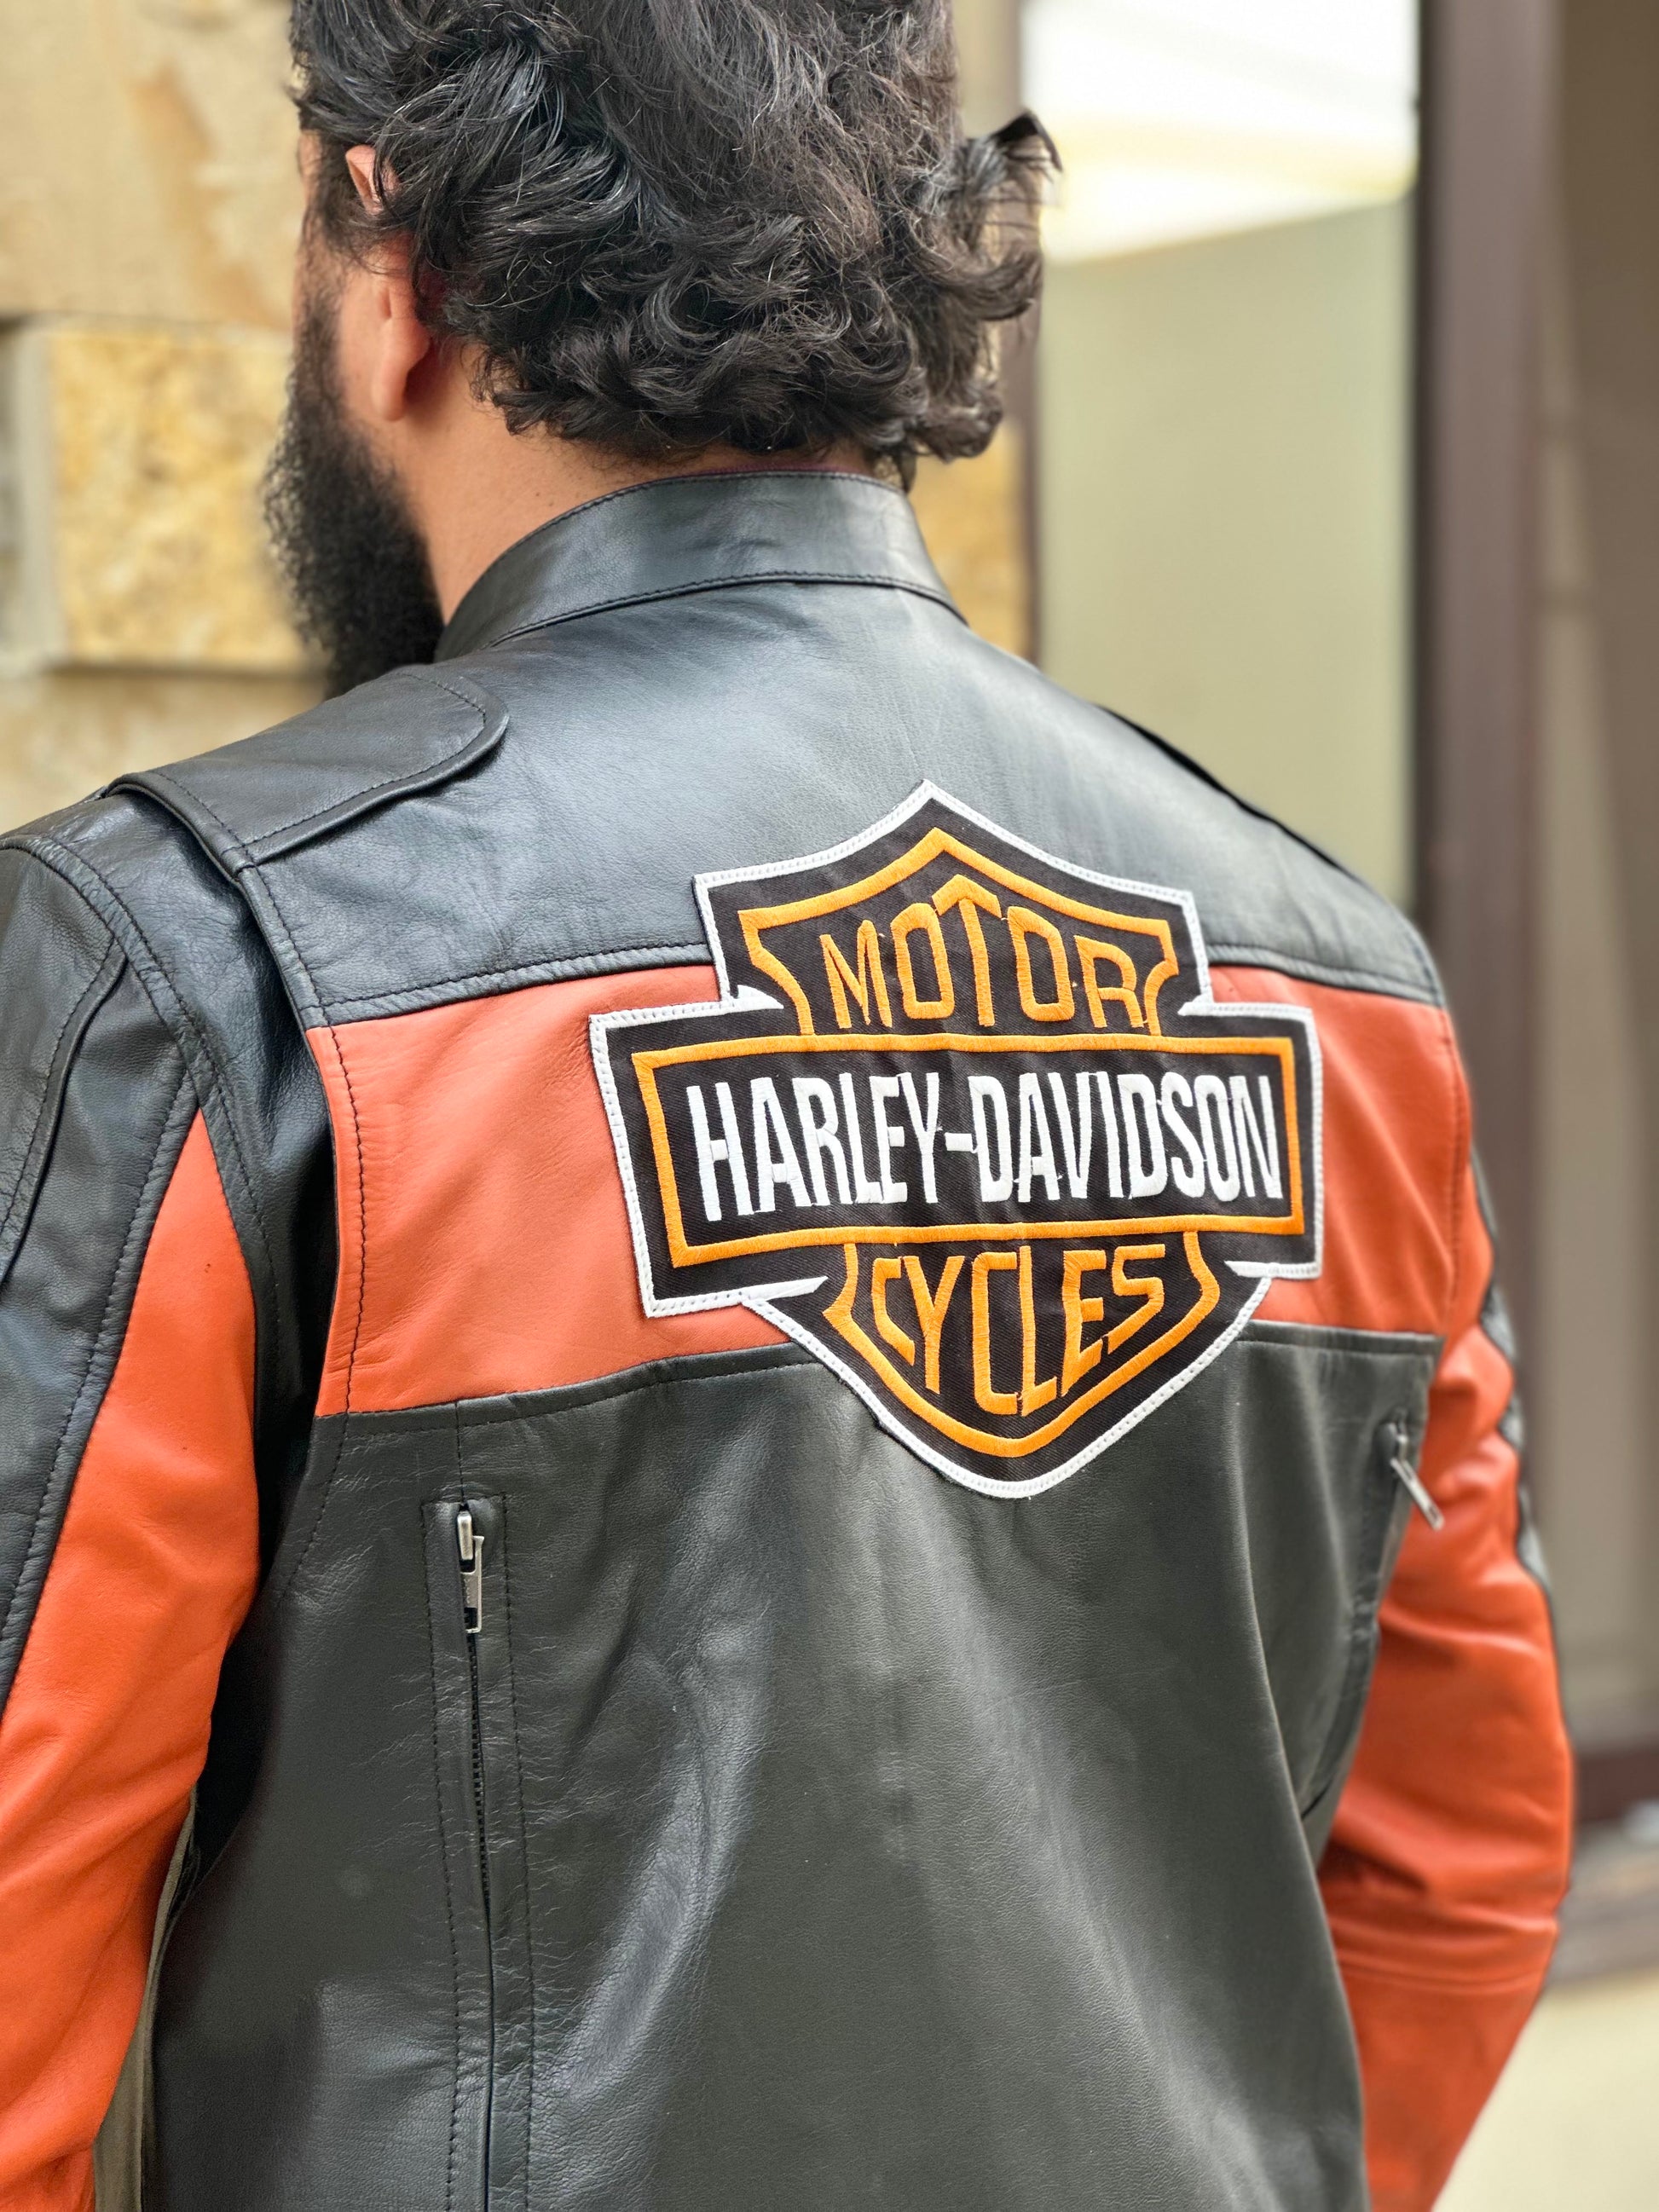 Harley Davidson Men's Biker Genuine Leather Jackets – Ruby Leather